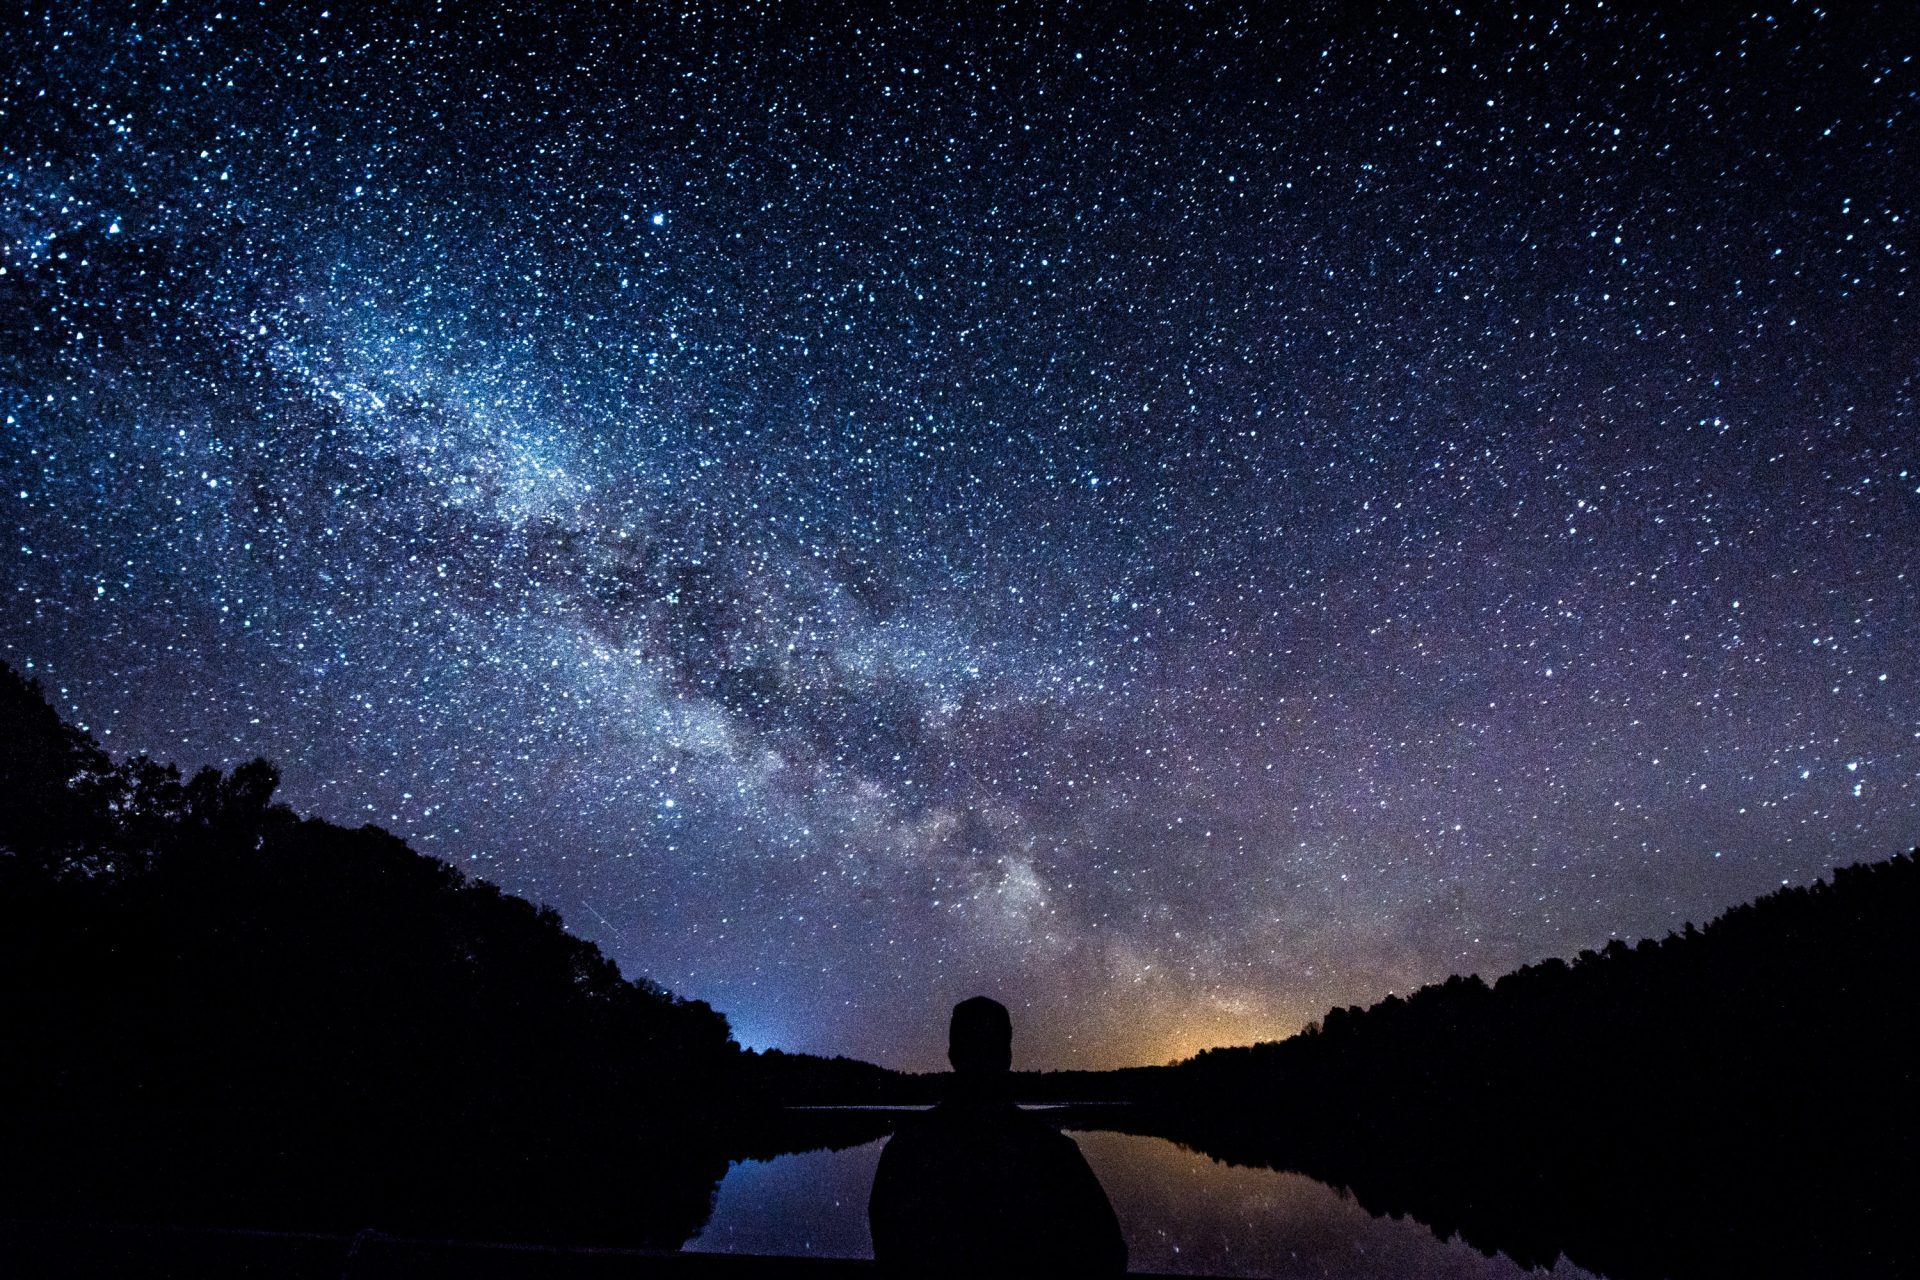 Il 10 agosto è la sera in cui i romantici guardano le stelle...ma cosa accadrebbe se per una notte fossero le stelle a guardare noi?